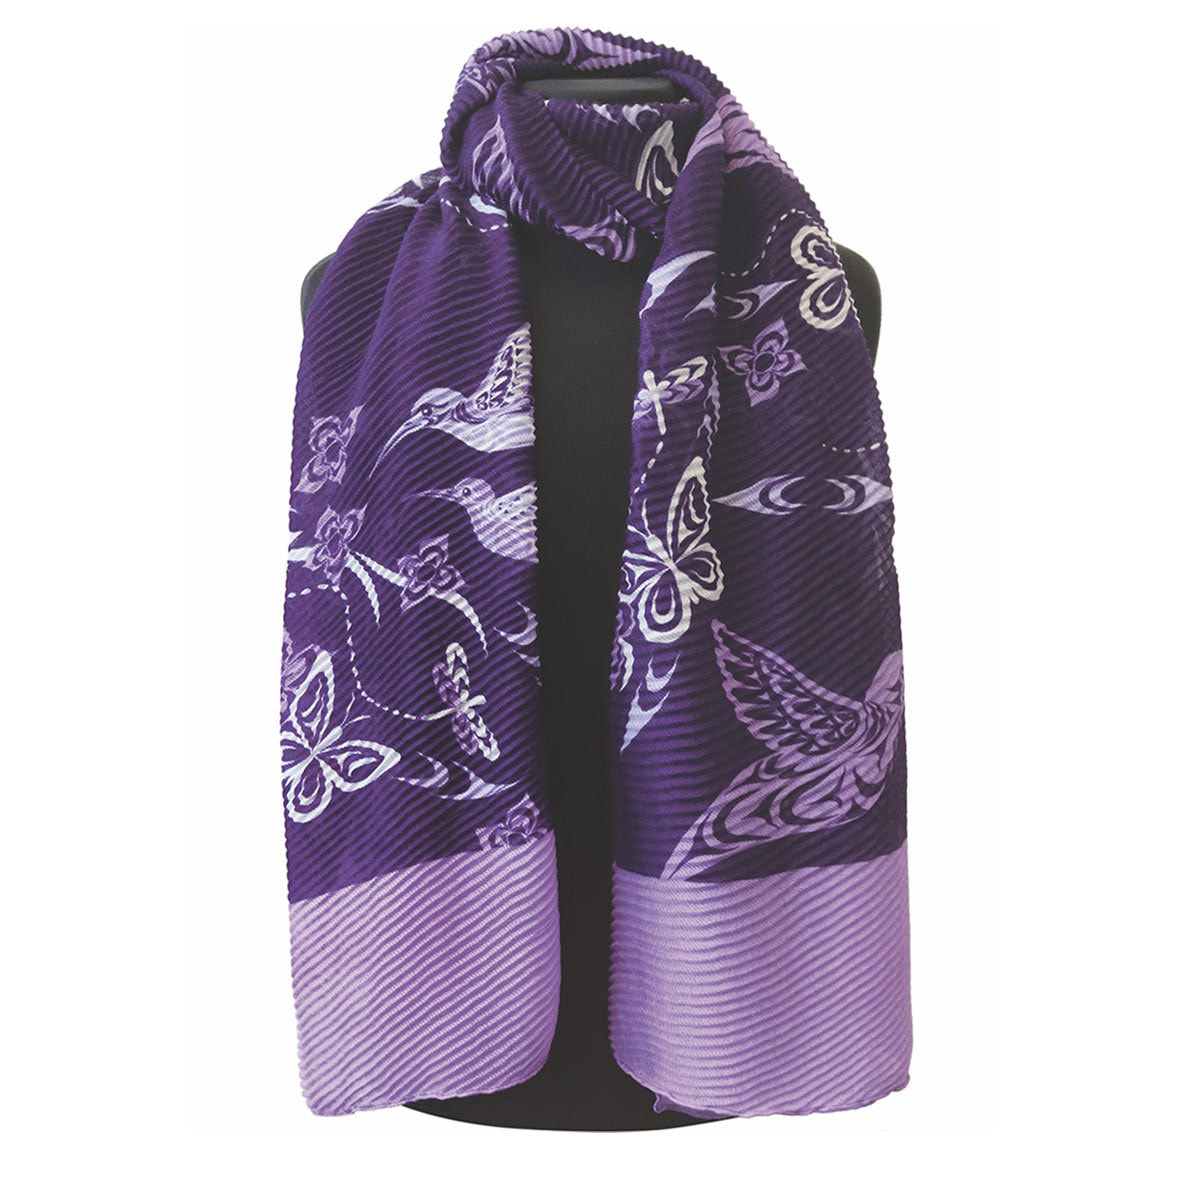 NW multicolor handloomed scarves Andean unique designs 